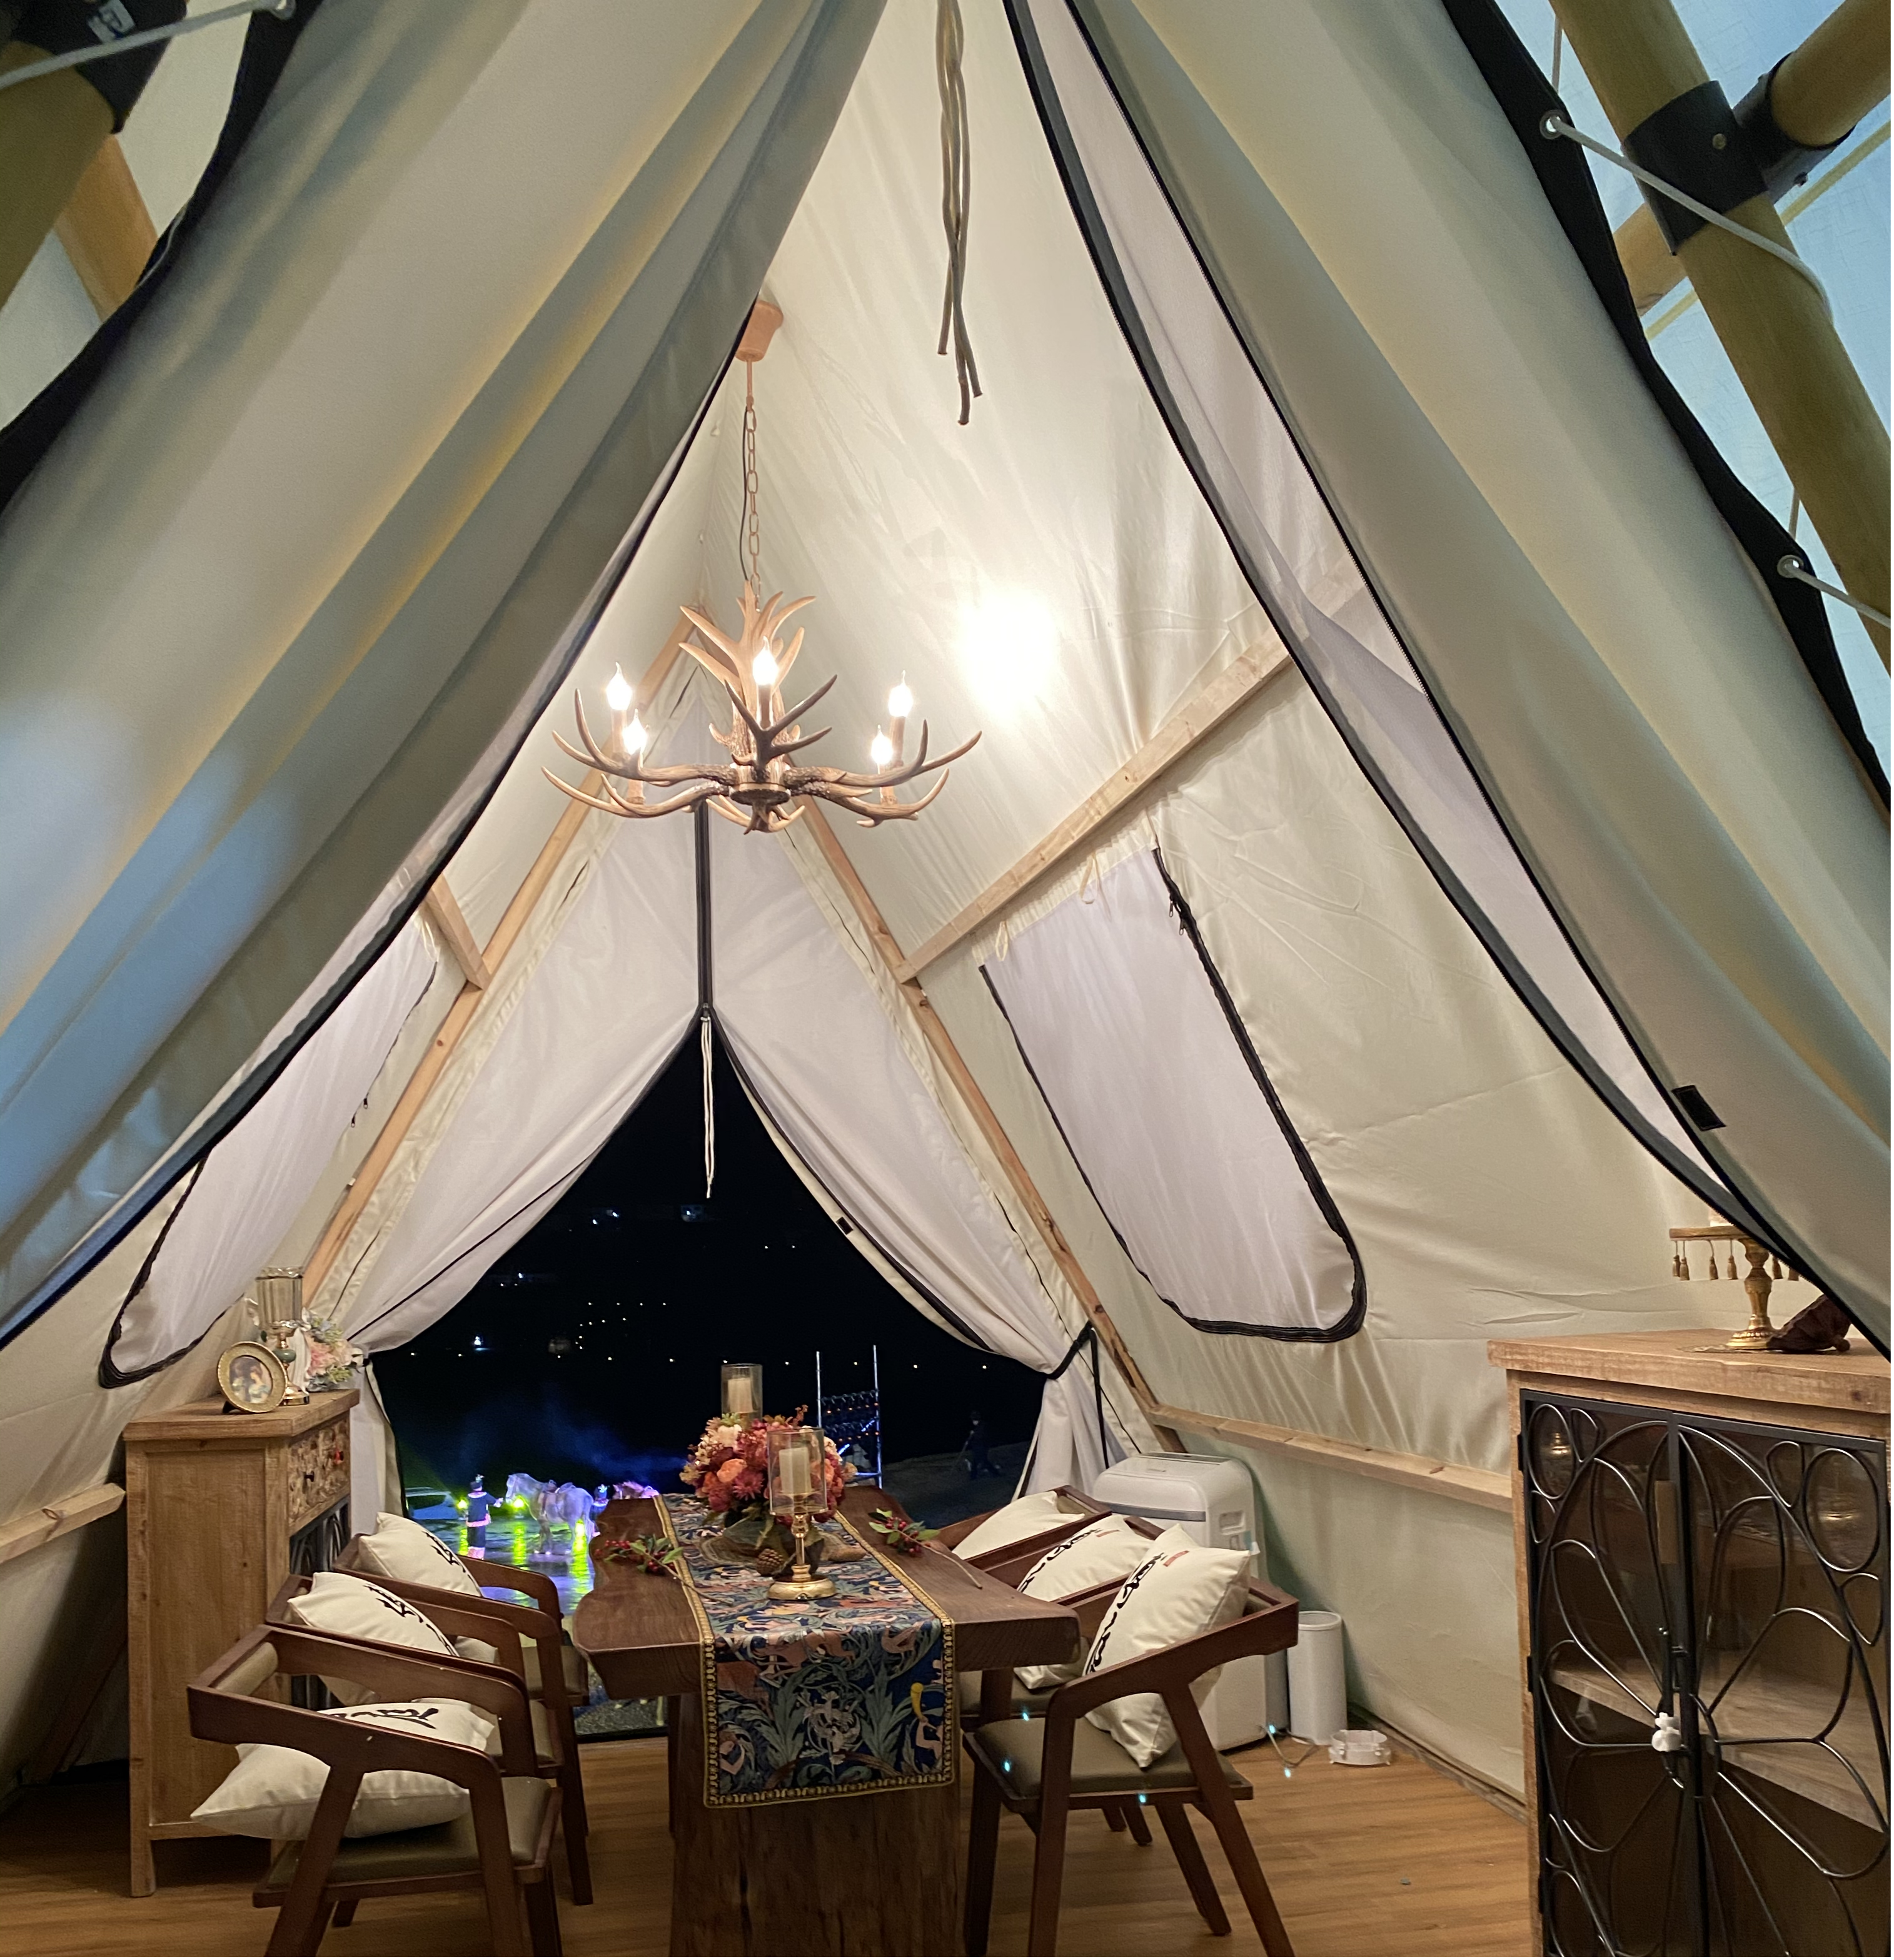 Tipi tenda tiang kayu glamping safari tenda mewah outdoor pesta pernikahan tenda (2)(1)